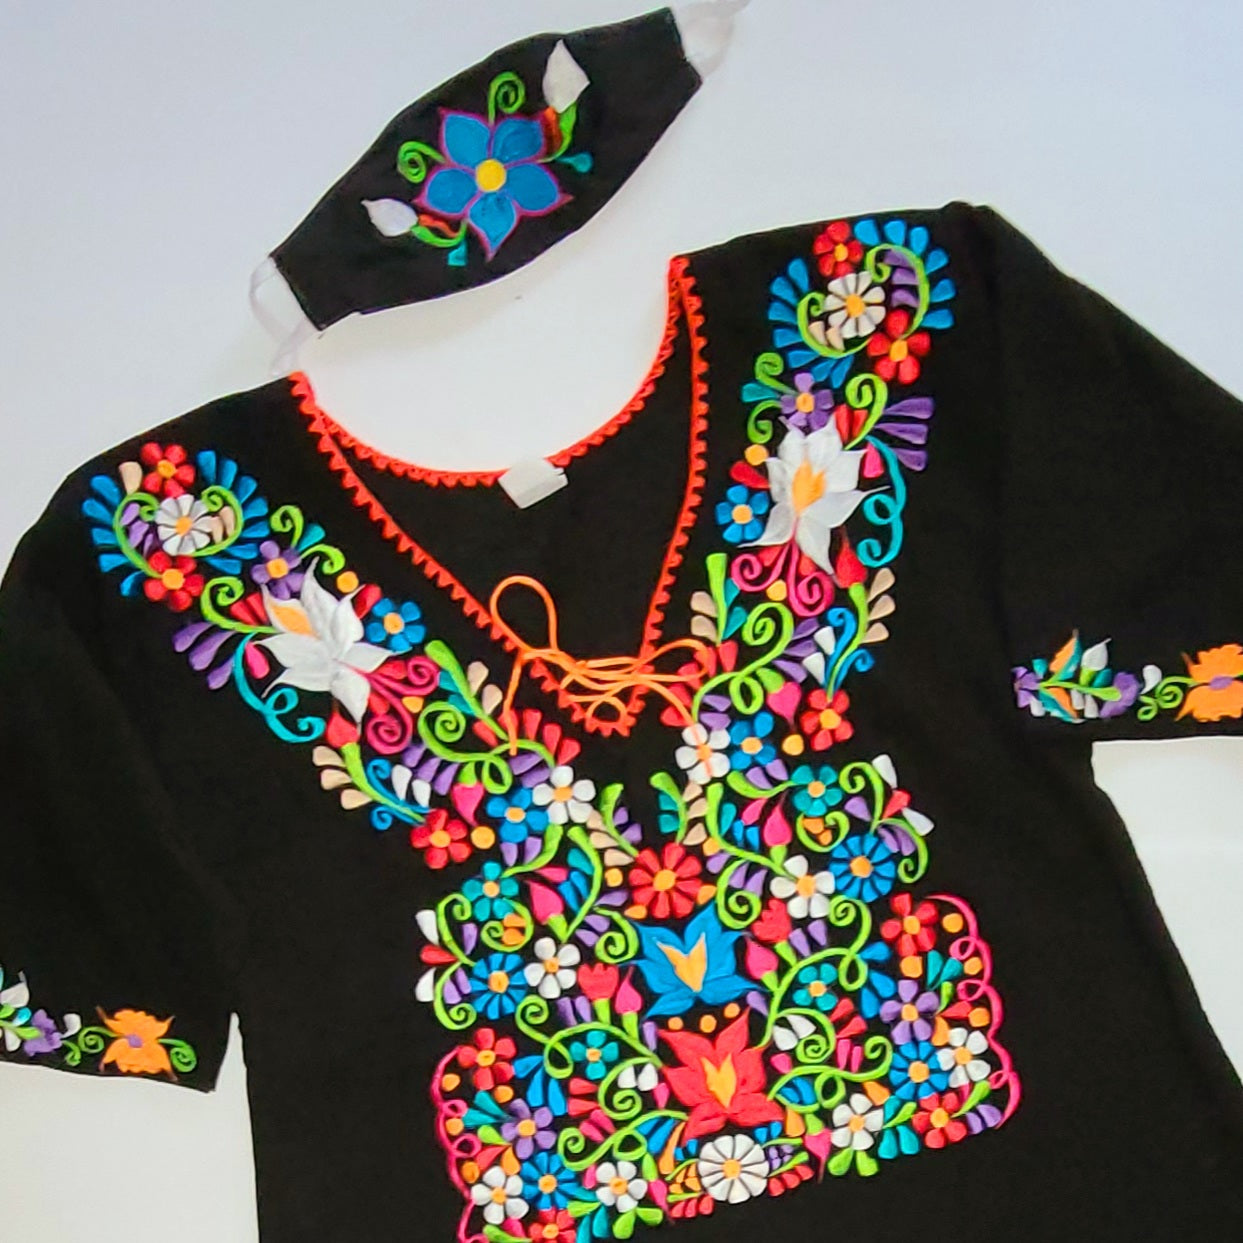 Flores de Mexico Embroidered Blouse - Plus Size